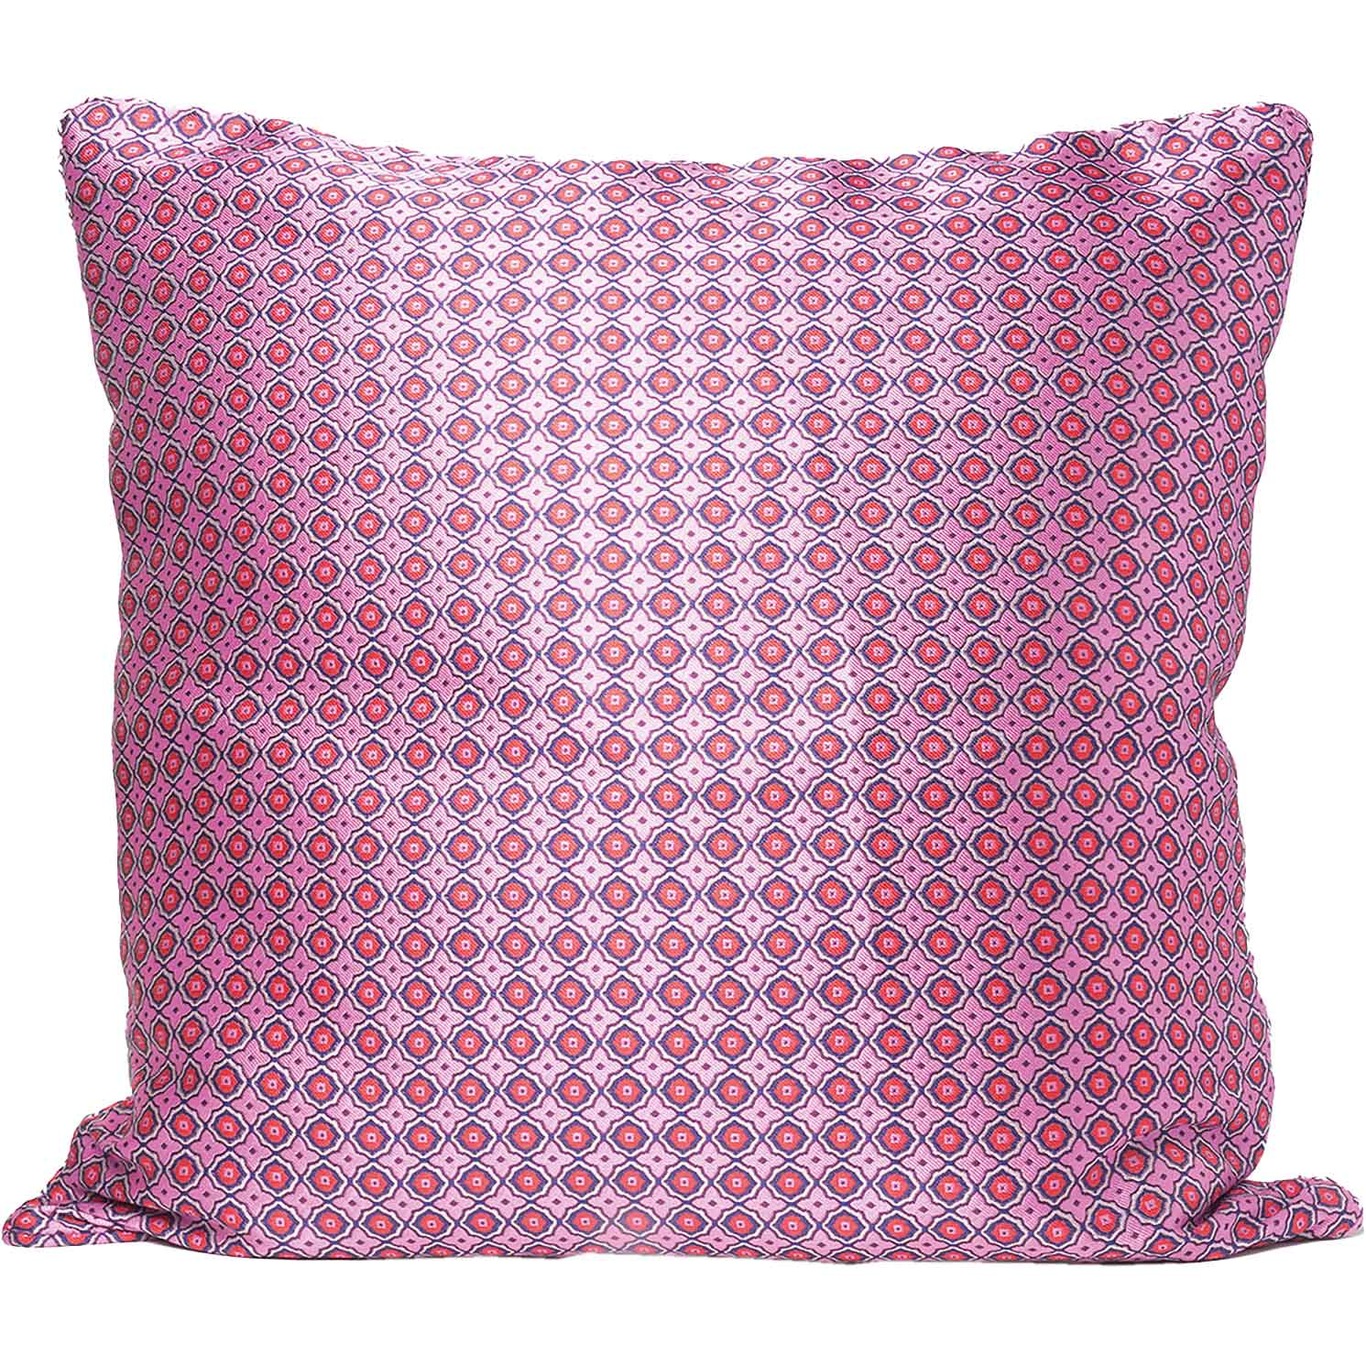 Artist Mosaic Cushion Cover 50x50 cm, Pink